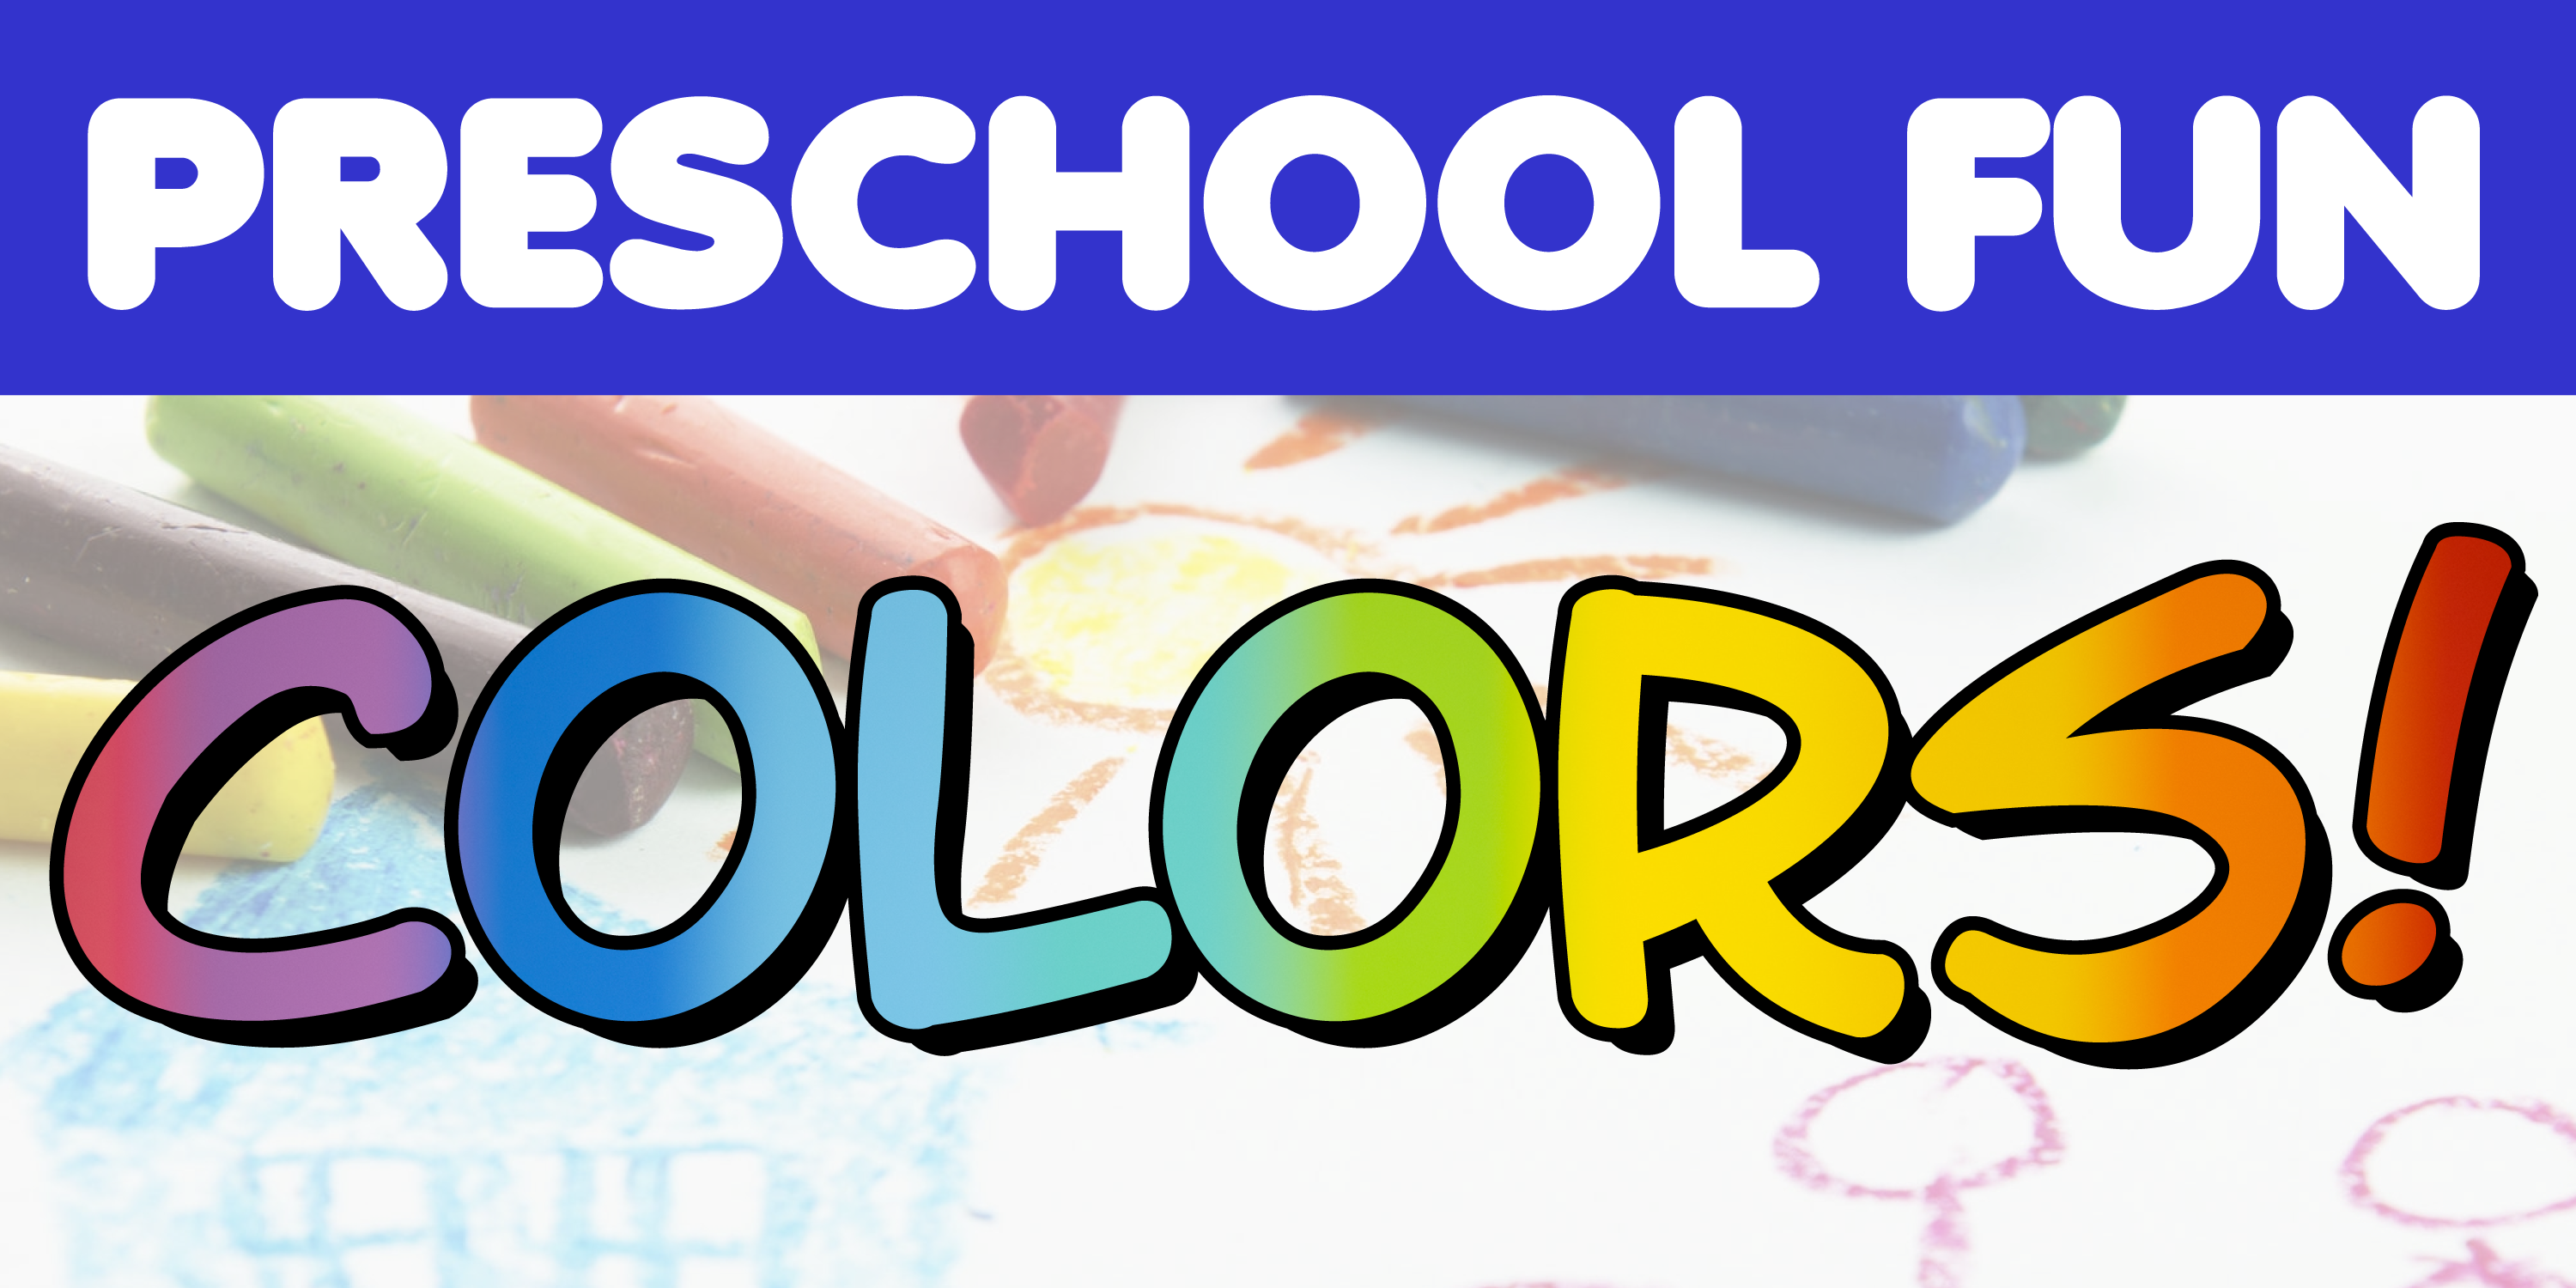 Preschool Fun: Colors!